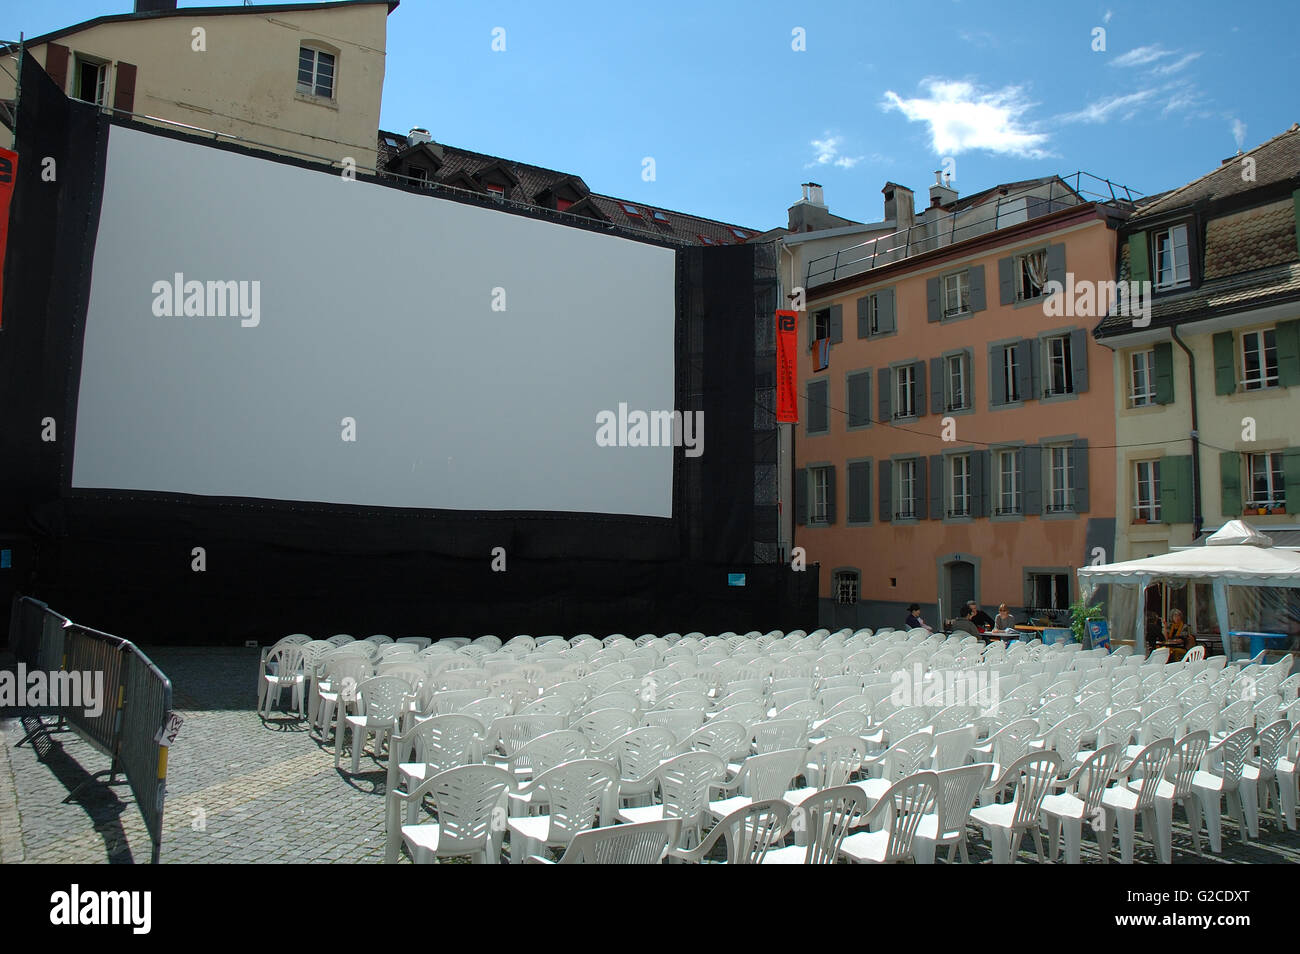 Vevey, Schweiz - 16. August 2014: Open Air Kino in Vevey in der Schweiz. Nicht identifizierte Personen sichtbar. Stockfoto